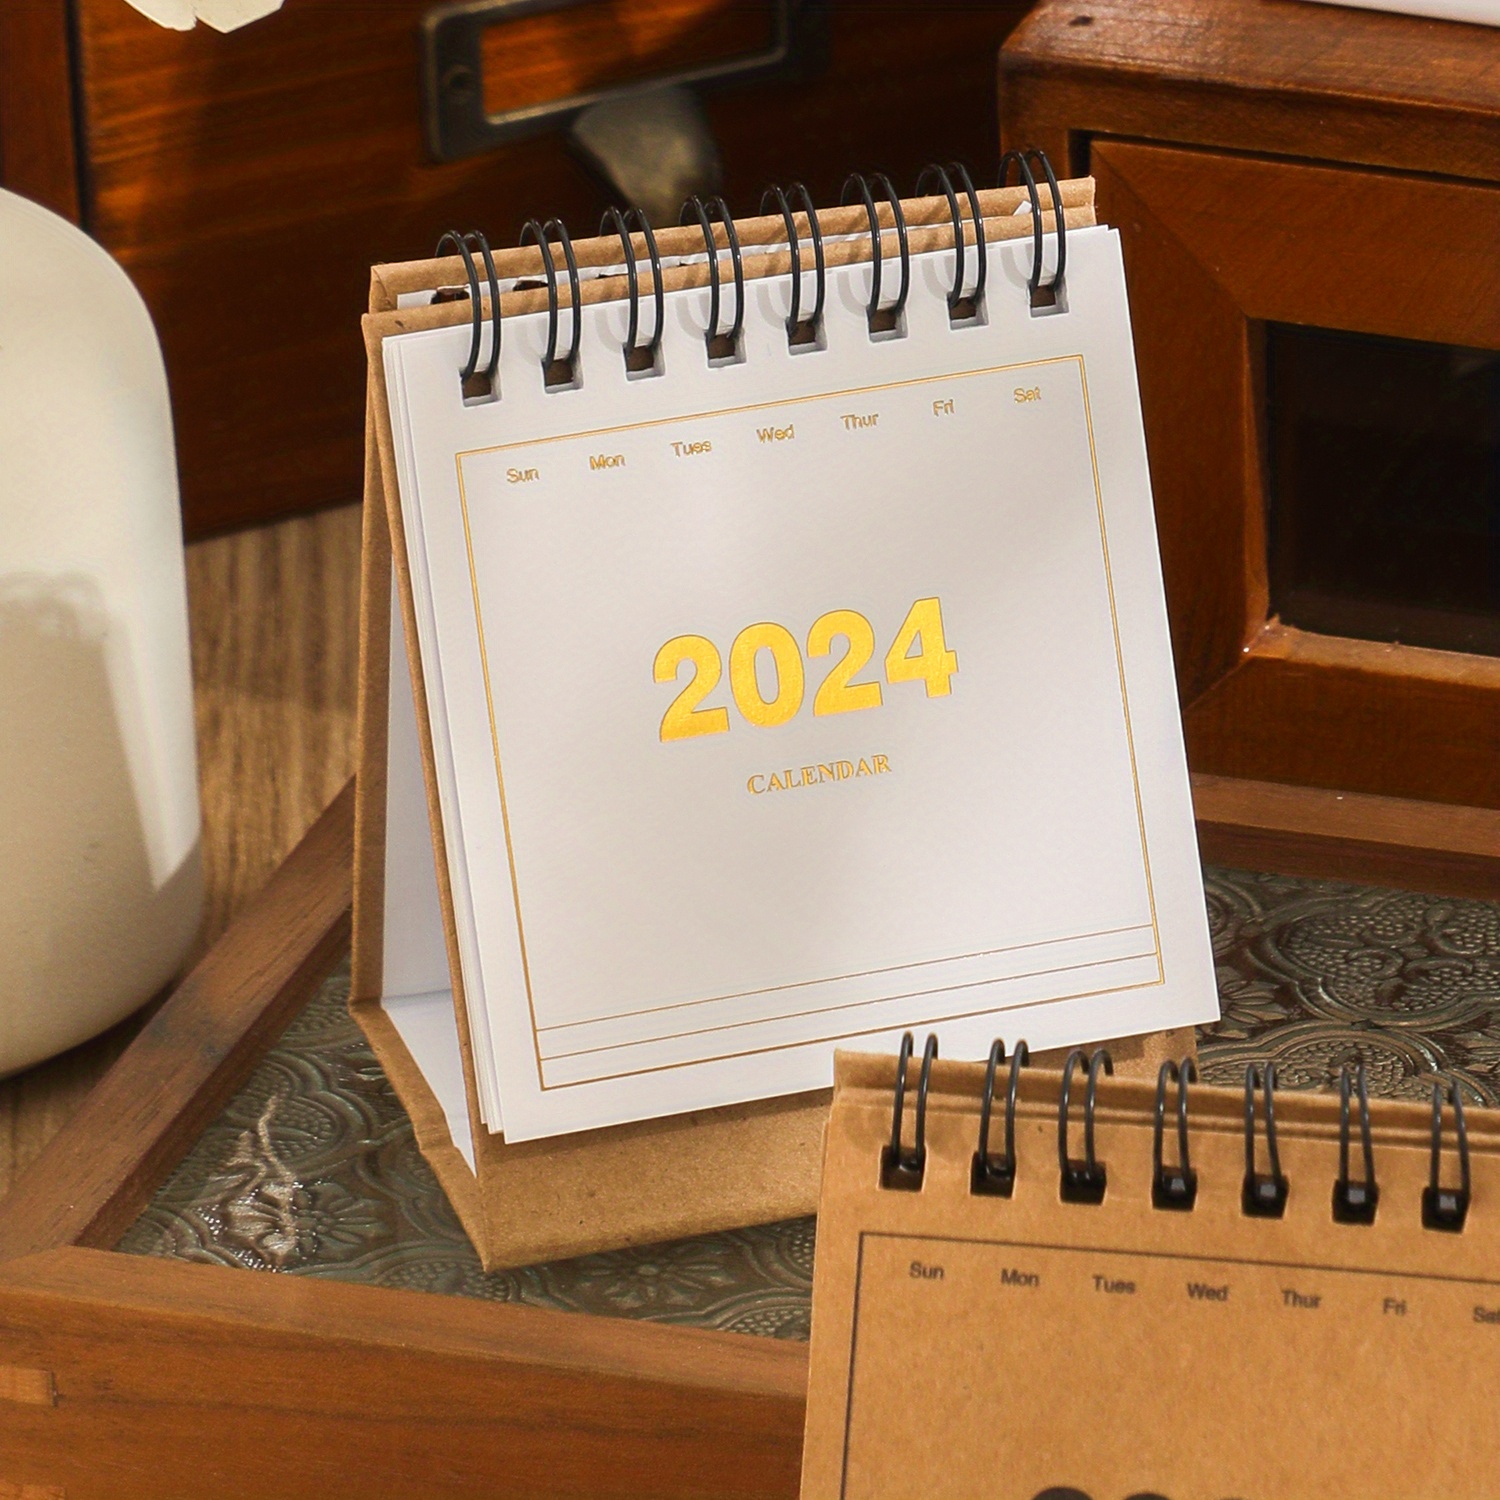 Mini calendrier de bureau en papier Bagasse‐ Commence le lundi